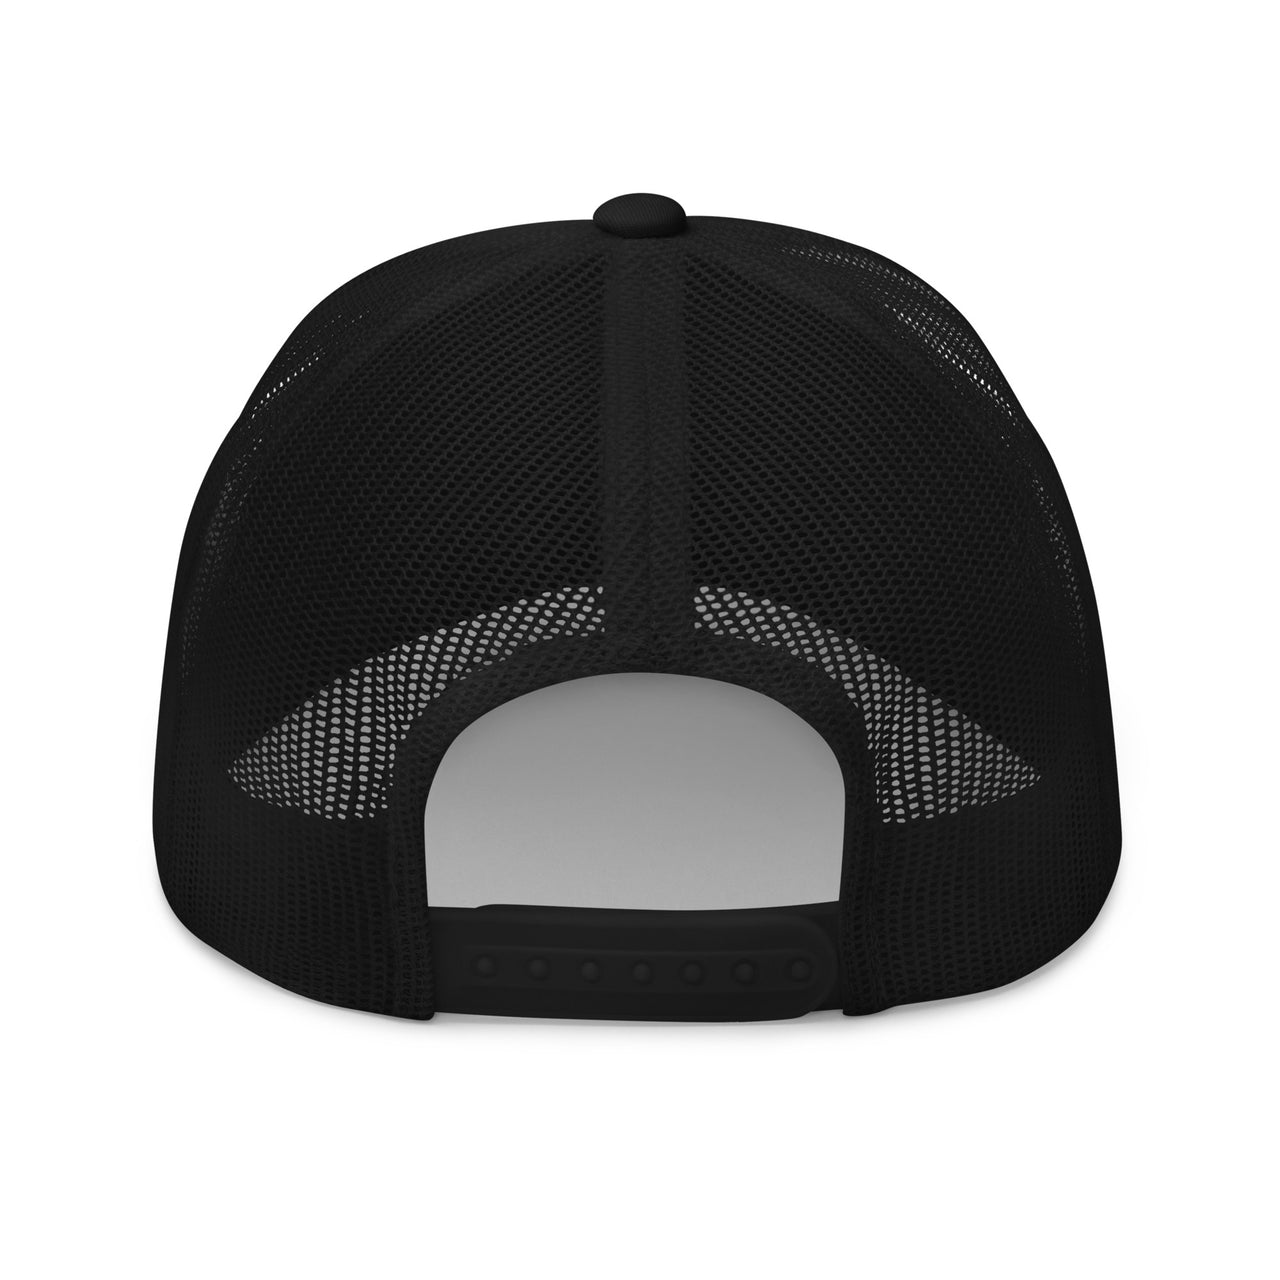 C10 Trucker hat in black back view